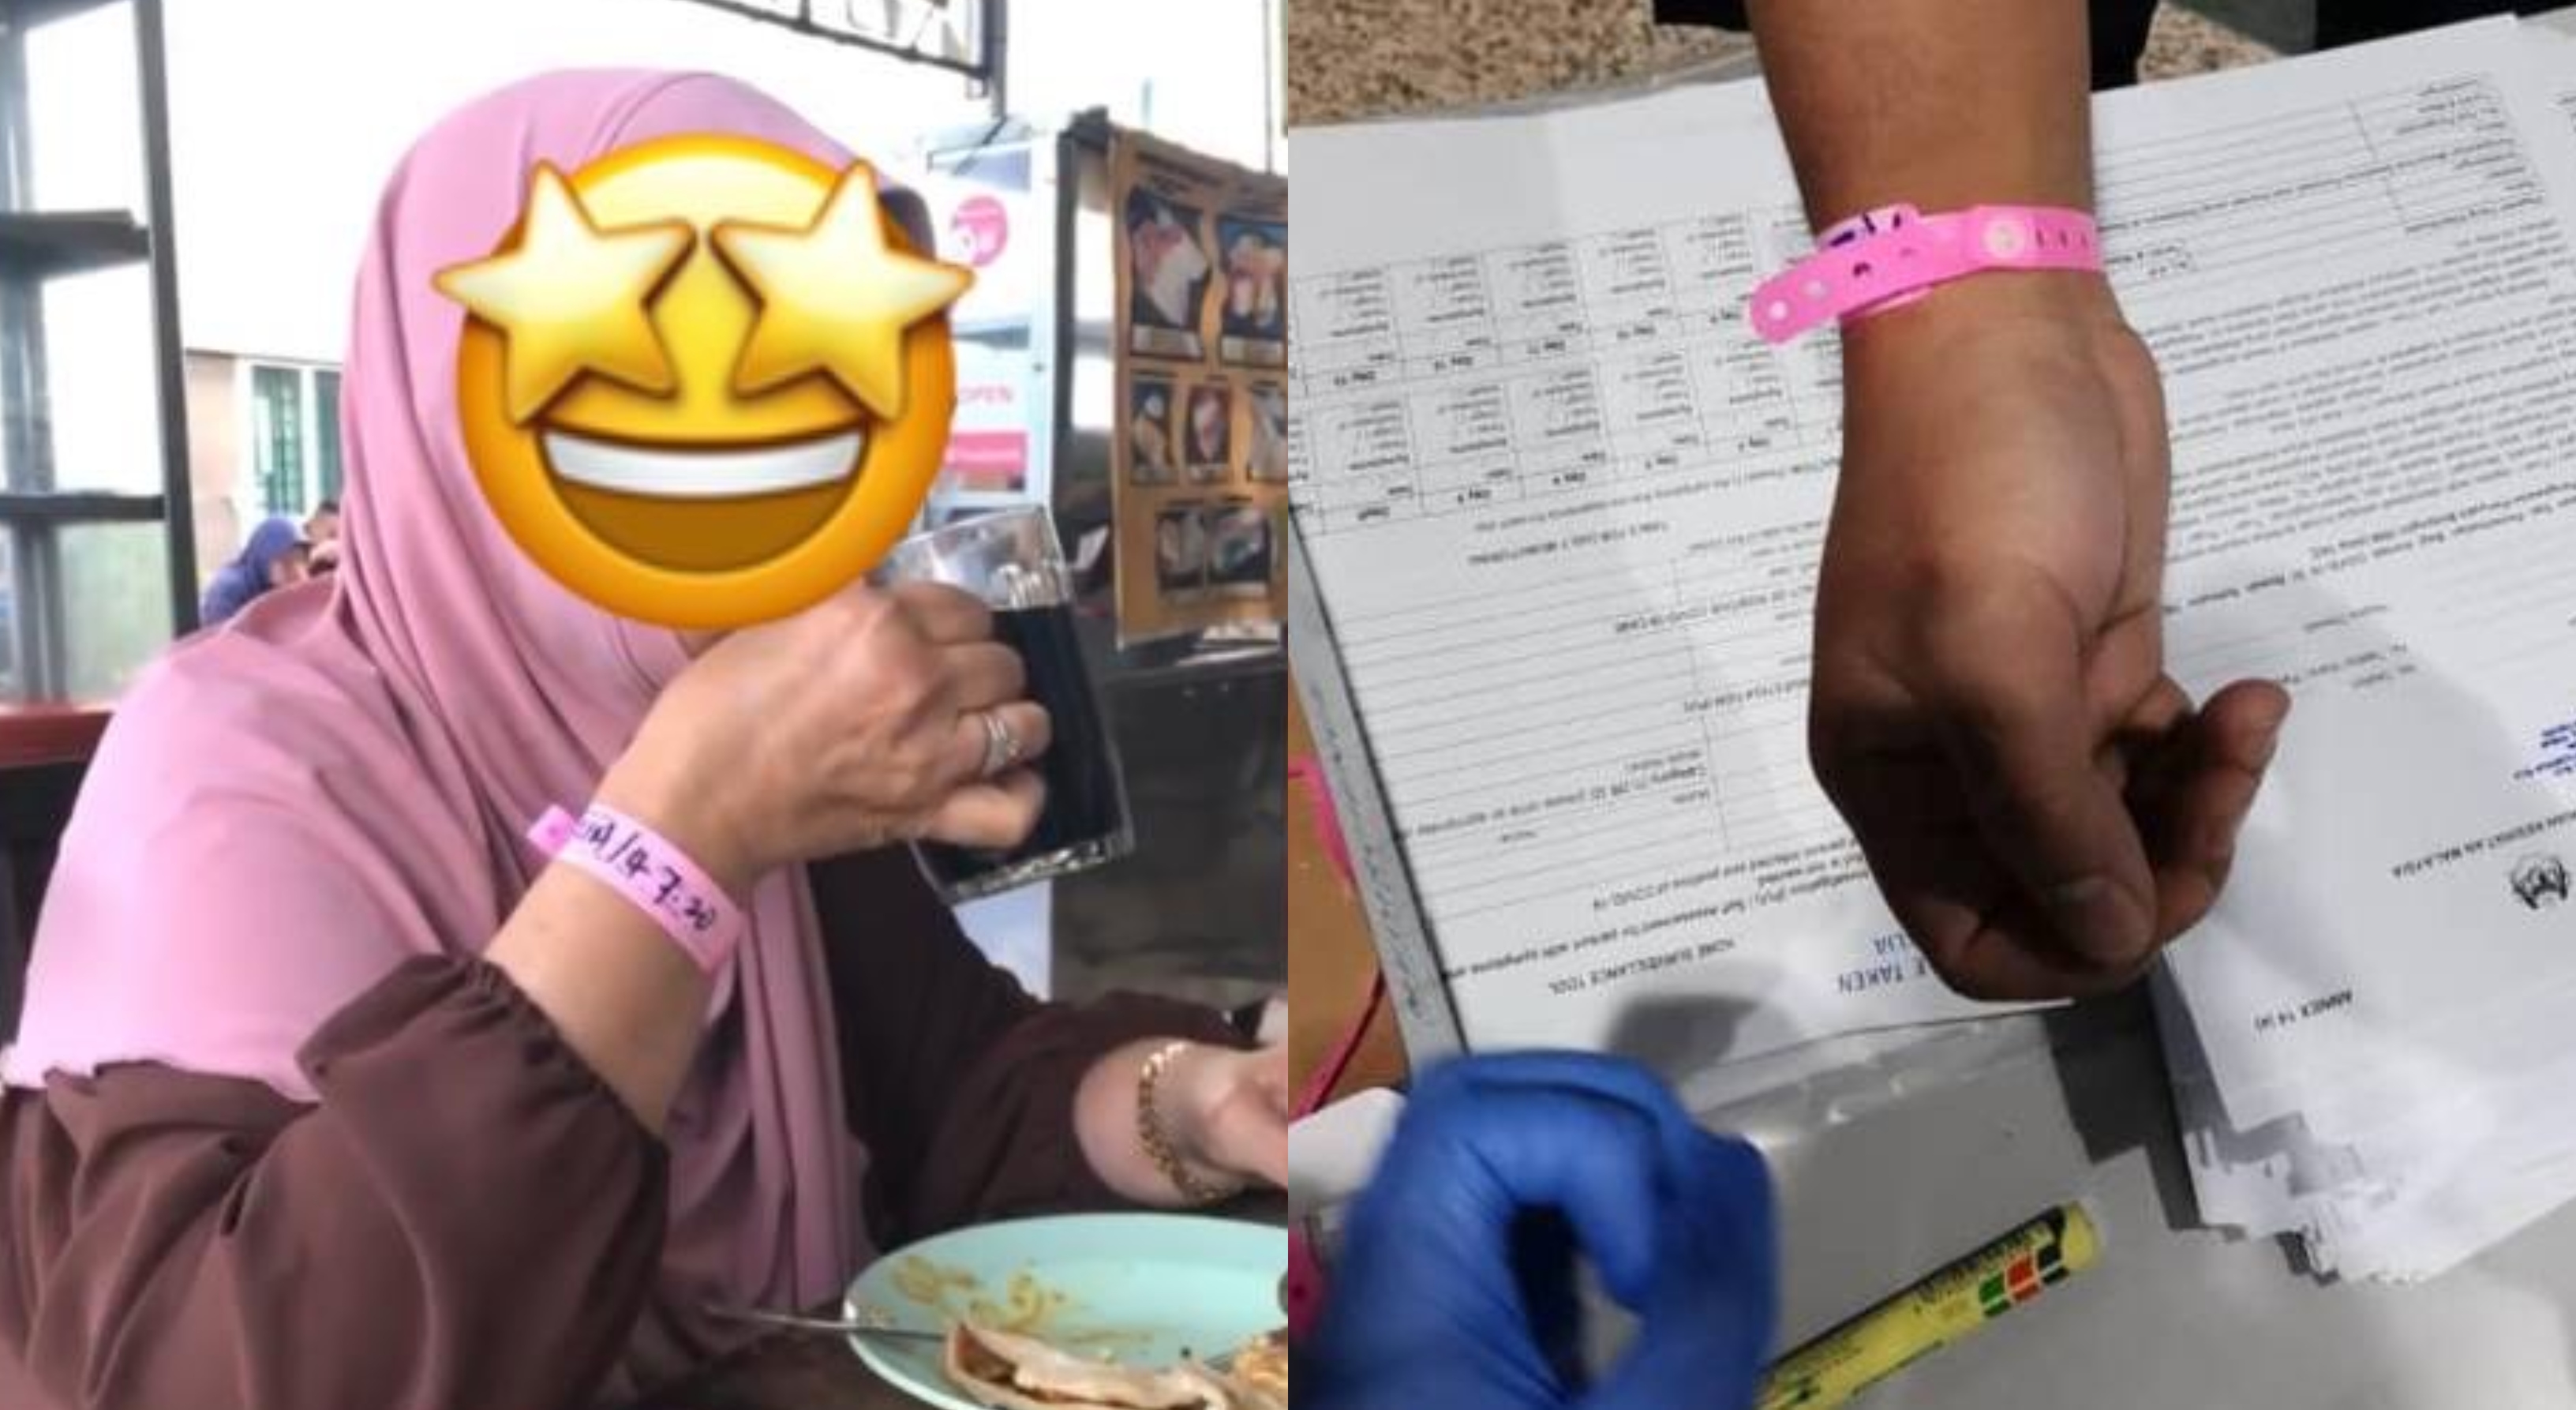 Identiti Makcik Wristband Merah Jambu Dikenalpasti, Siasatan Sedang Dijalankan